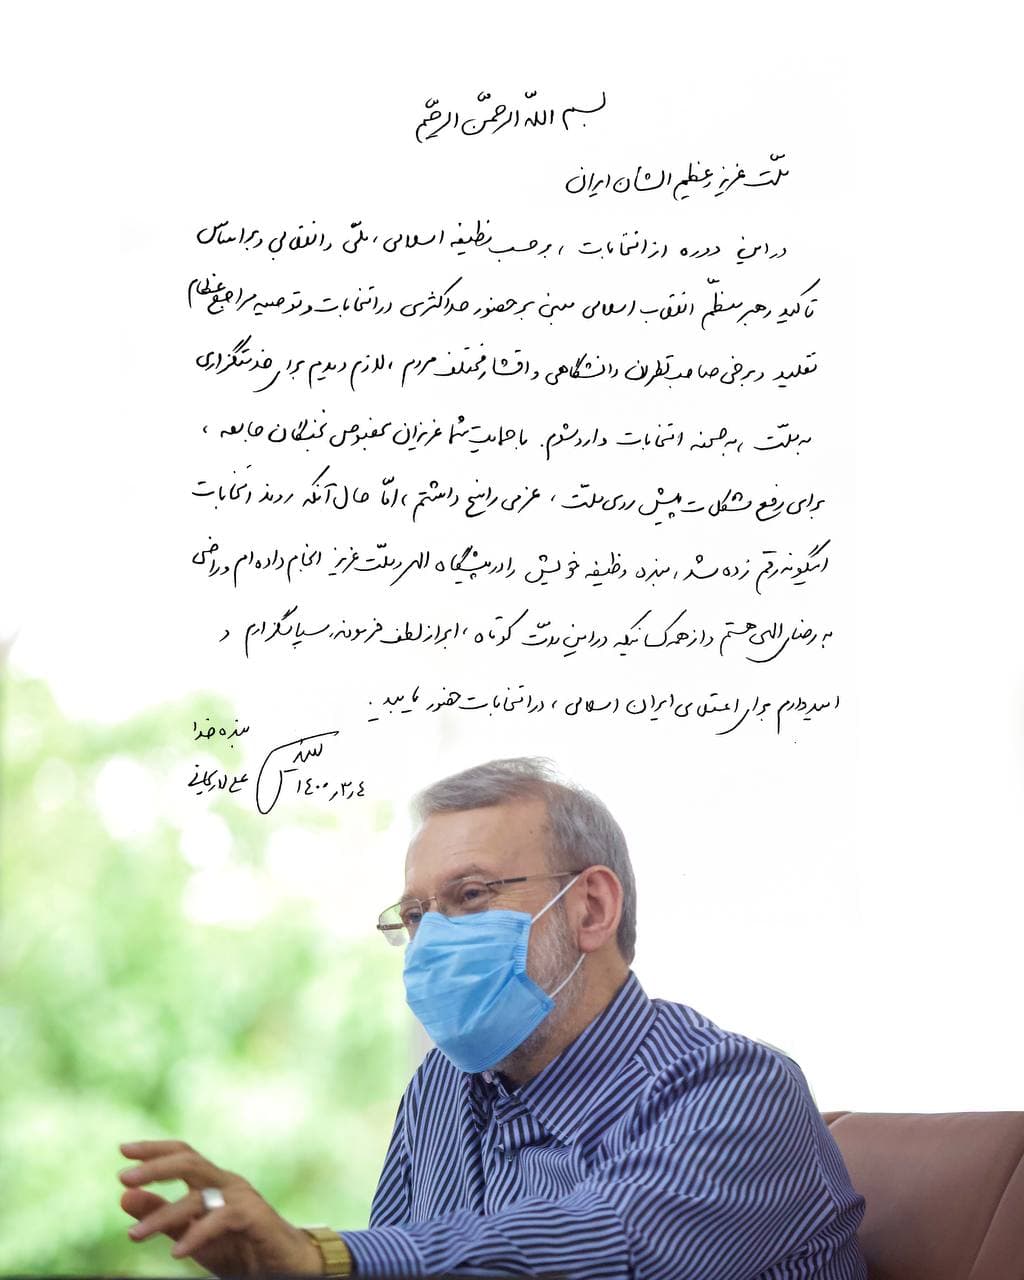 بیانیه علی لاریجانی پس از رد صلاحیتش